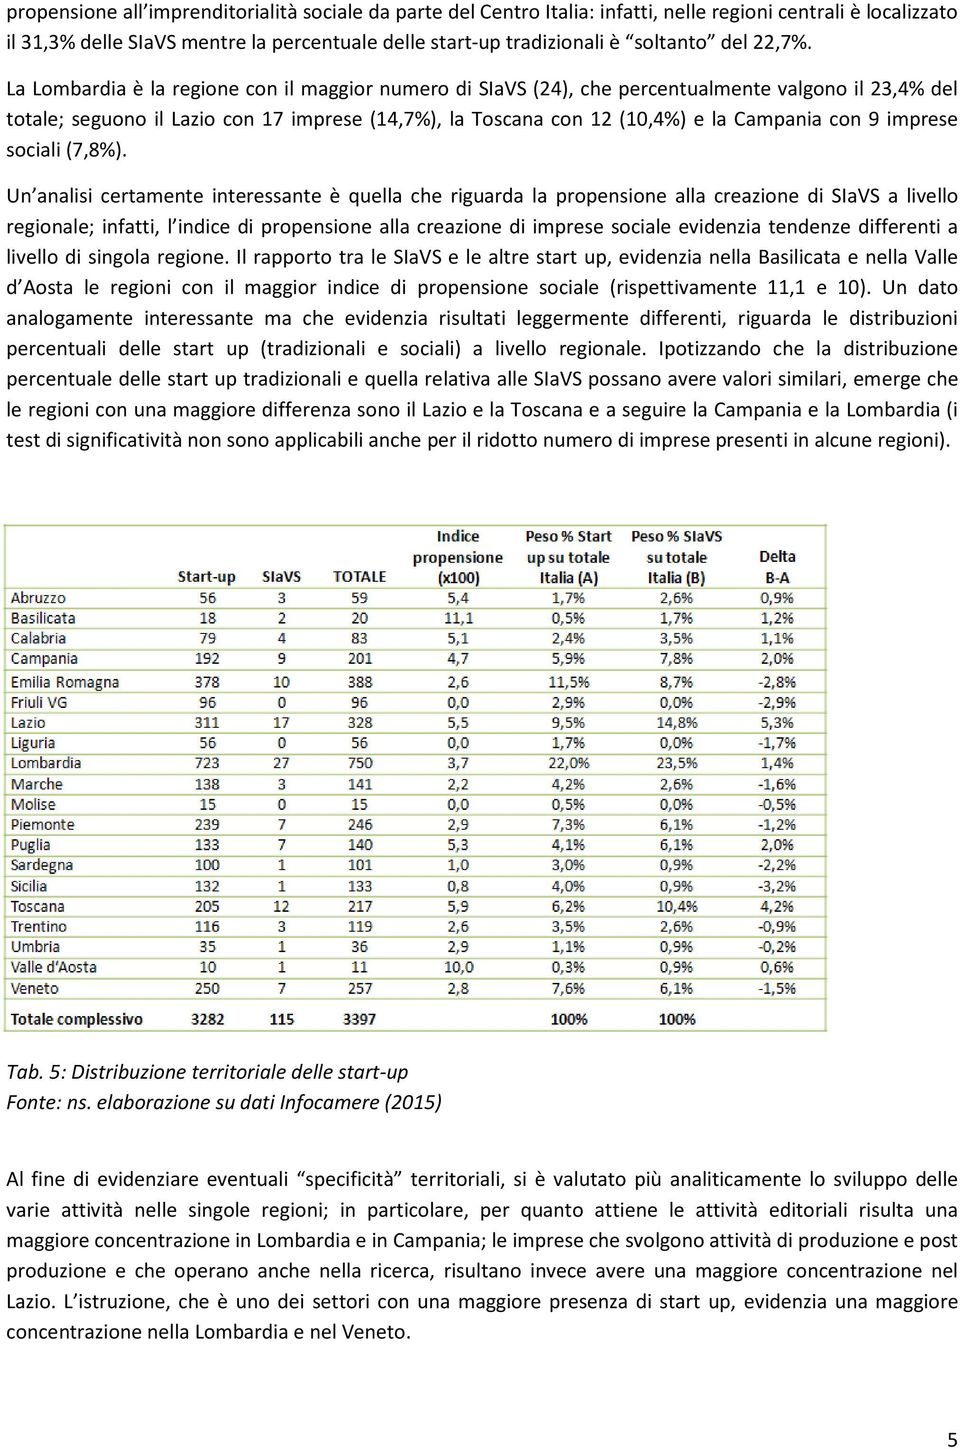 La Lombardia è la regione con il maggior numero di SIaVS (24), che percentualmente valgono il 23,4% del totale; seguono il Lazio con 17 imprese (14,7%), la Toscana con 12 (10,4%) e la Campania con 9